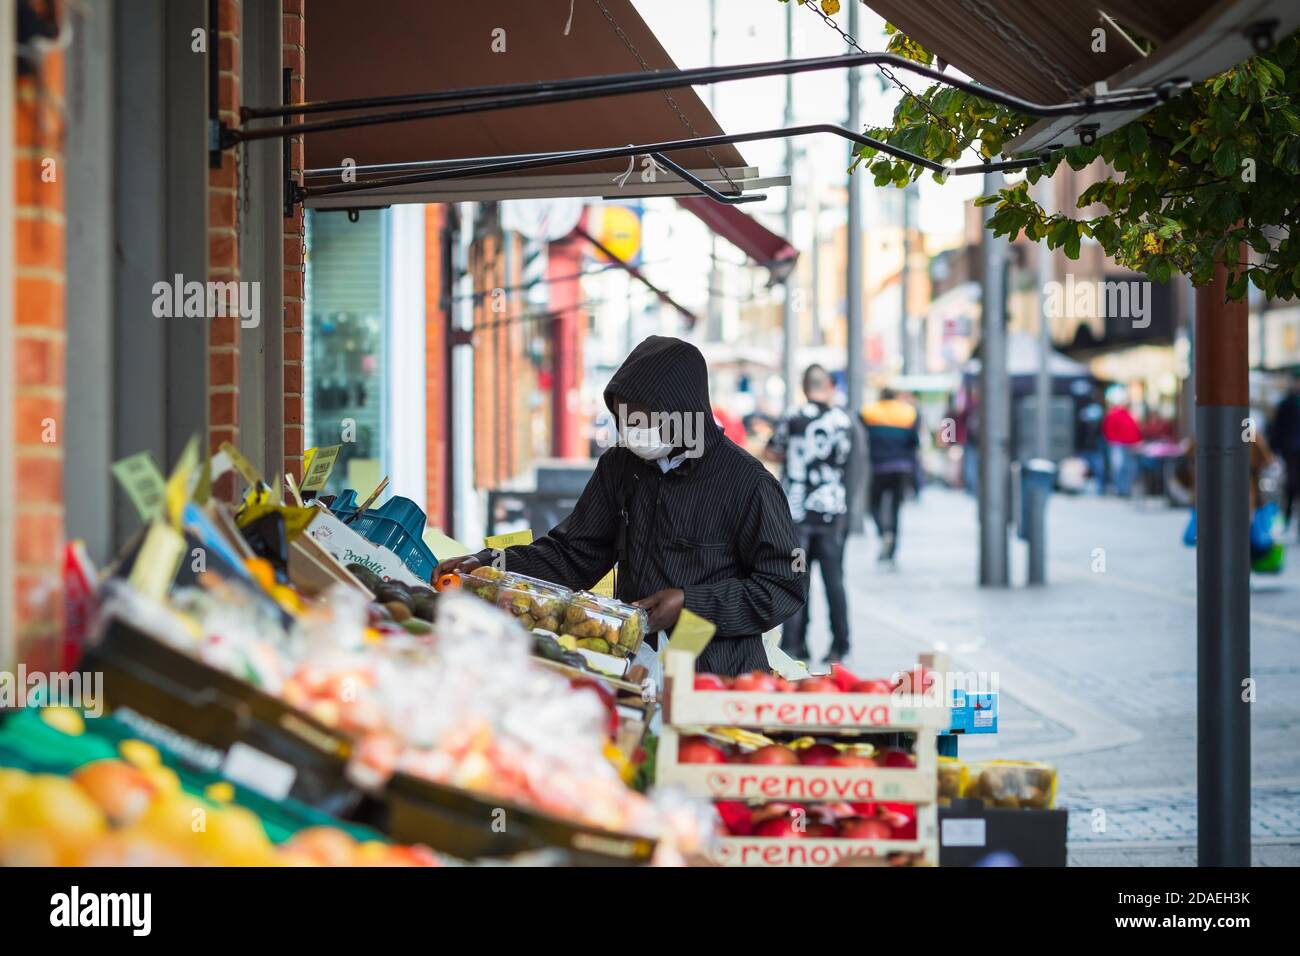 Londres, Royaume-Uni - 3 novembre 2020 - UN homme noir portant un masque facial lorsqu'il fait des achats de fruits sur le marché de Walthamstow Banque D'Images